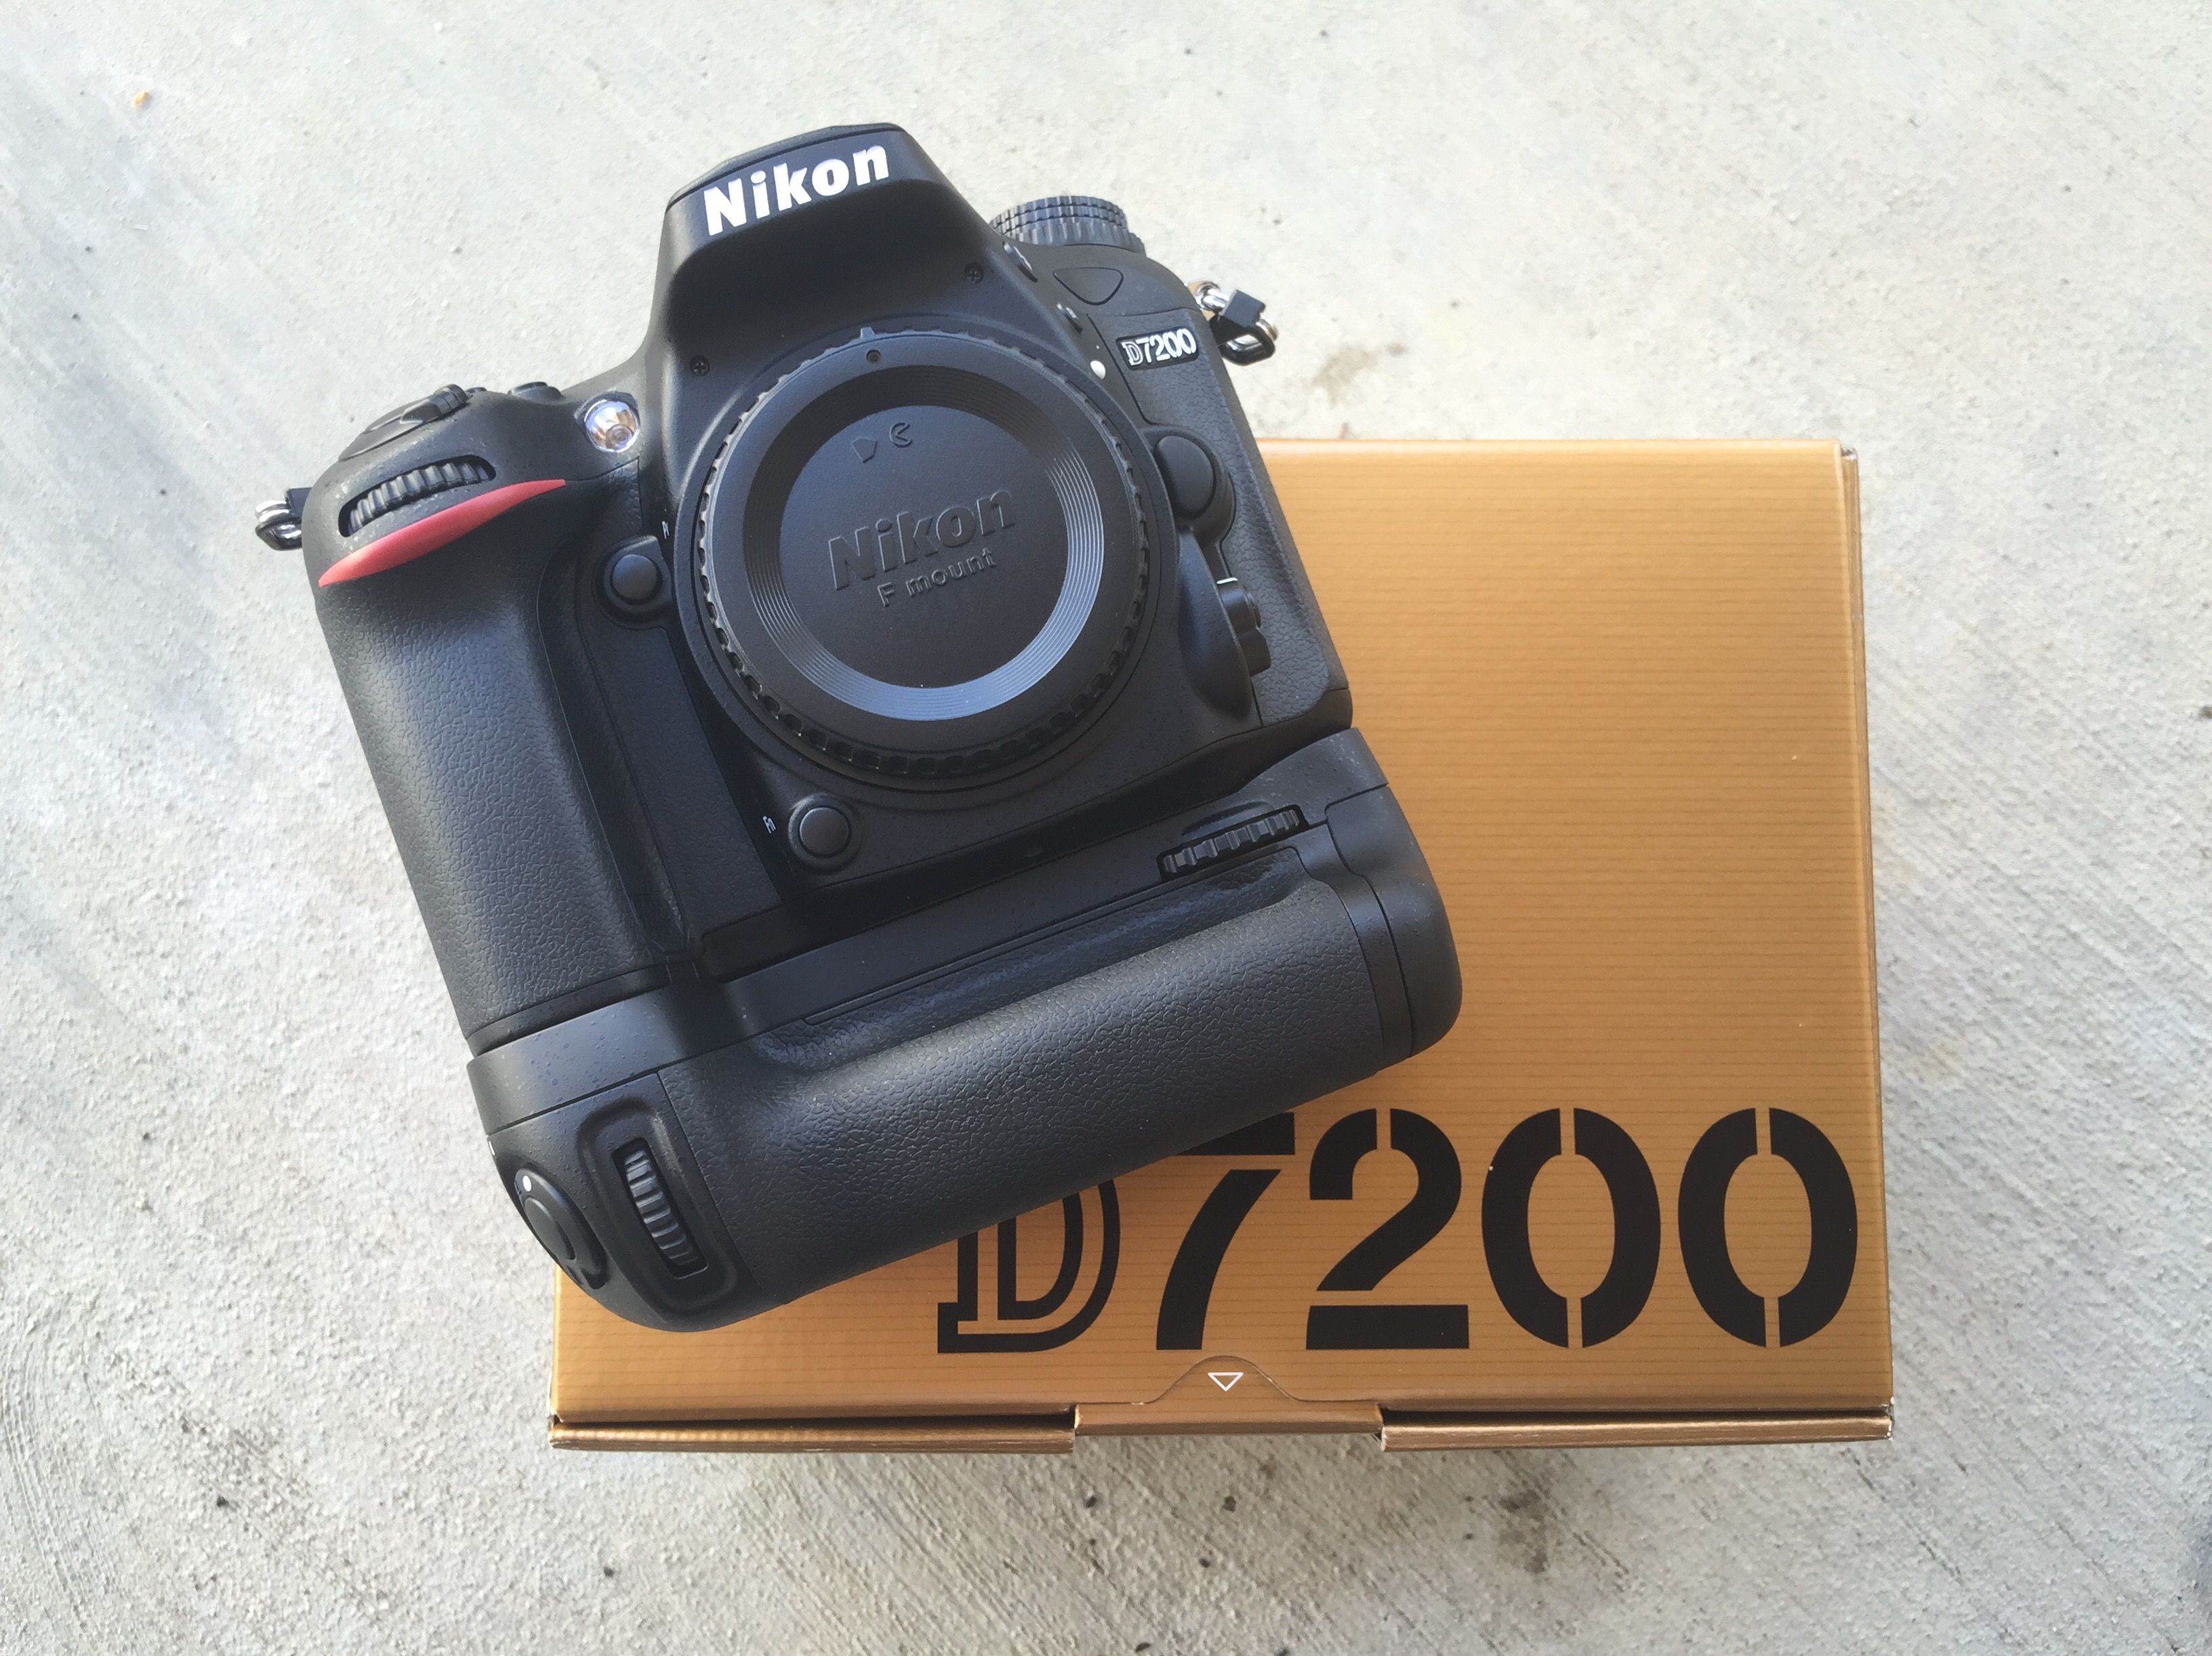 Nikon D7200 a Review